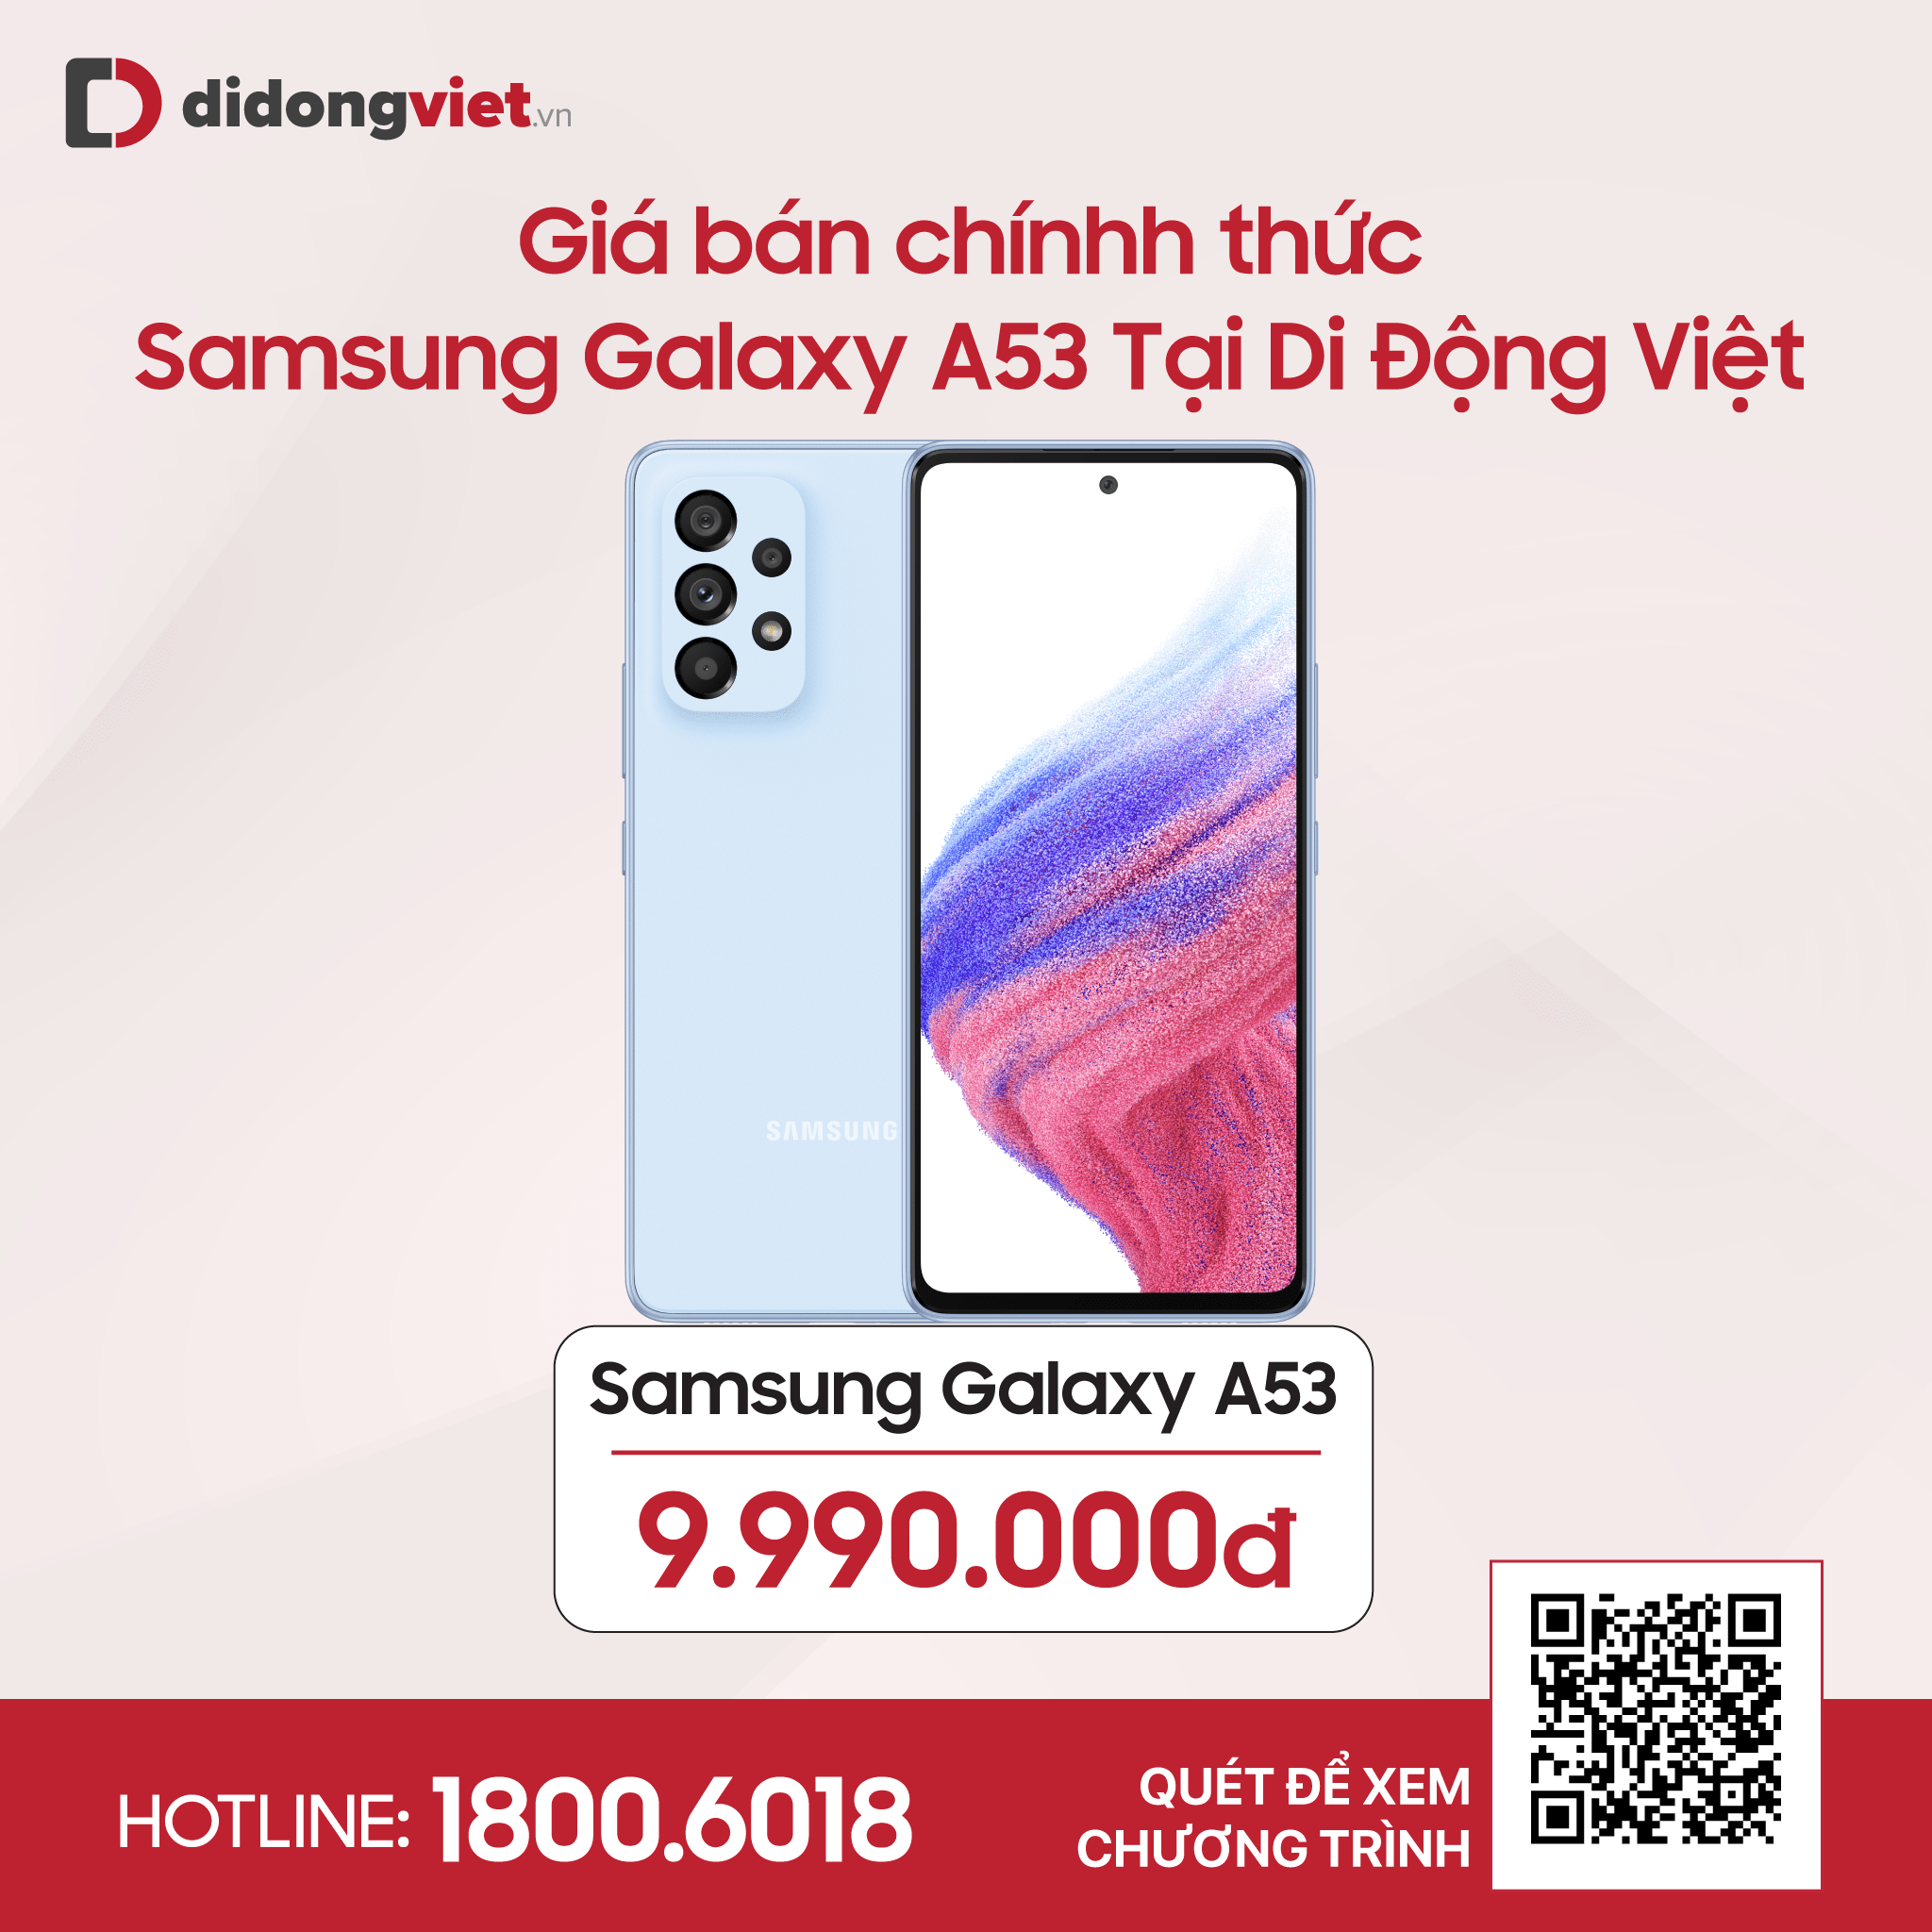 Samsung Galaxy A53 5G ra mắt, giá 9.99 triệu đồng tặng kèm bộ quà tặng trị giá đến 3.8 triệu đồng khi đặt trước